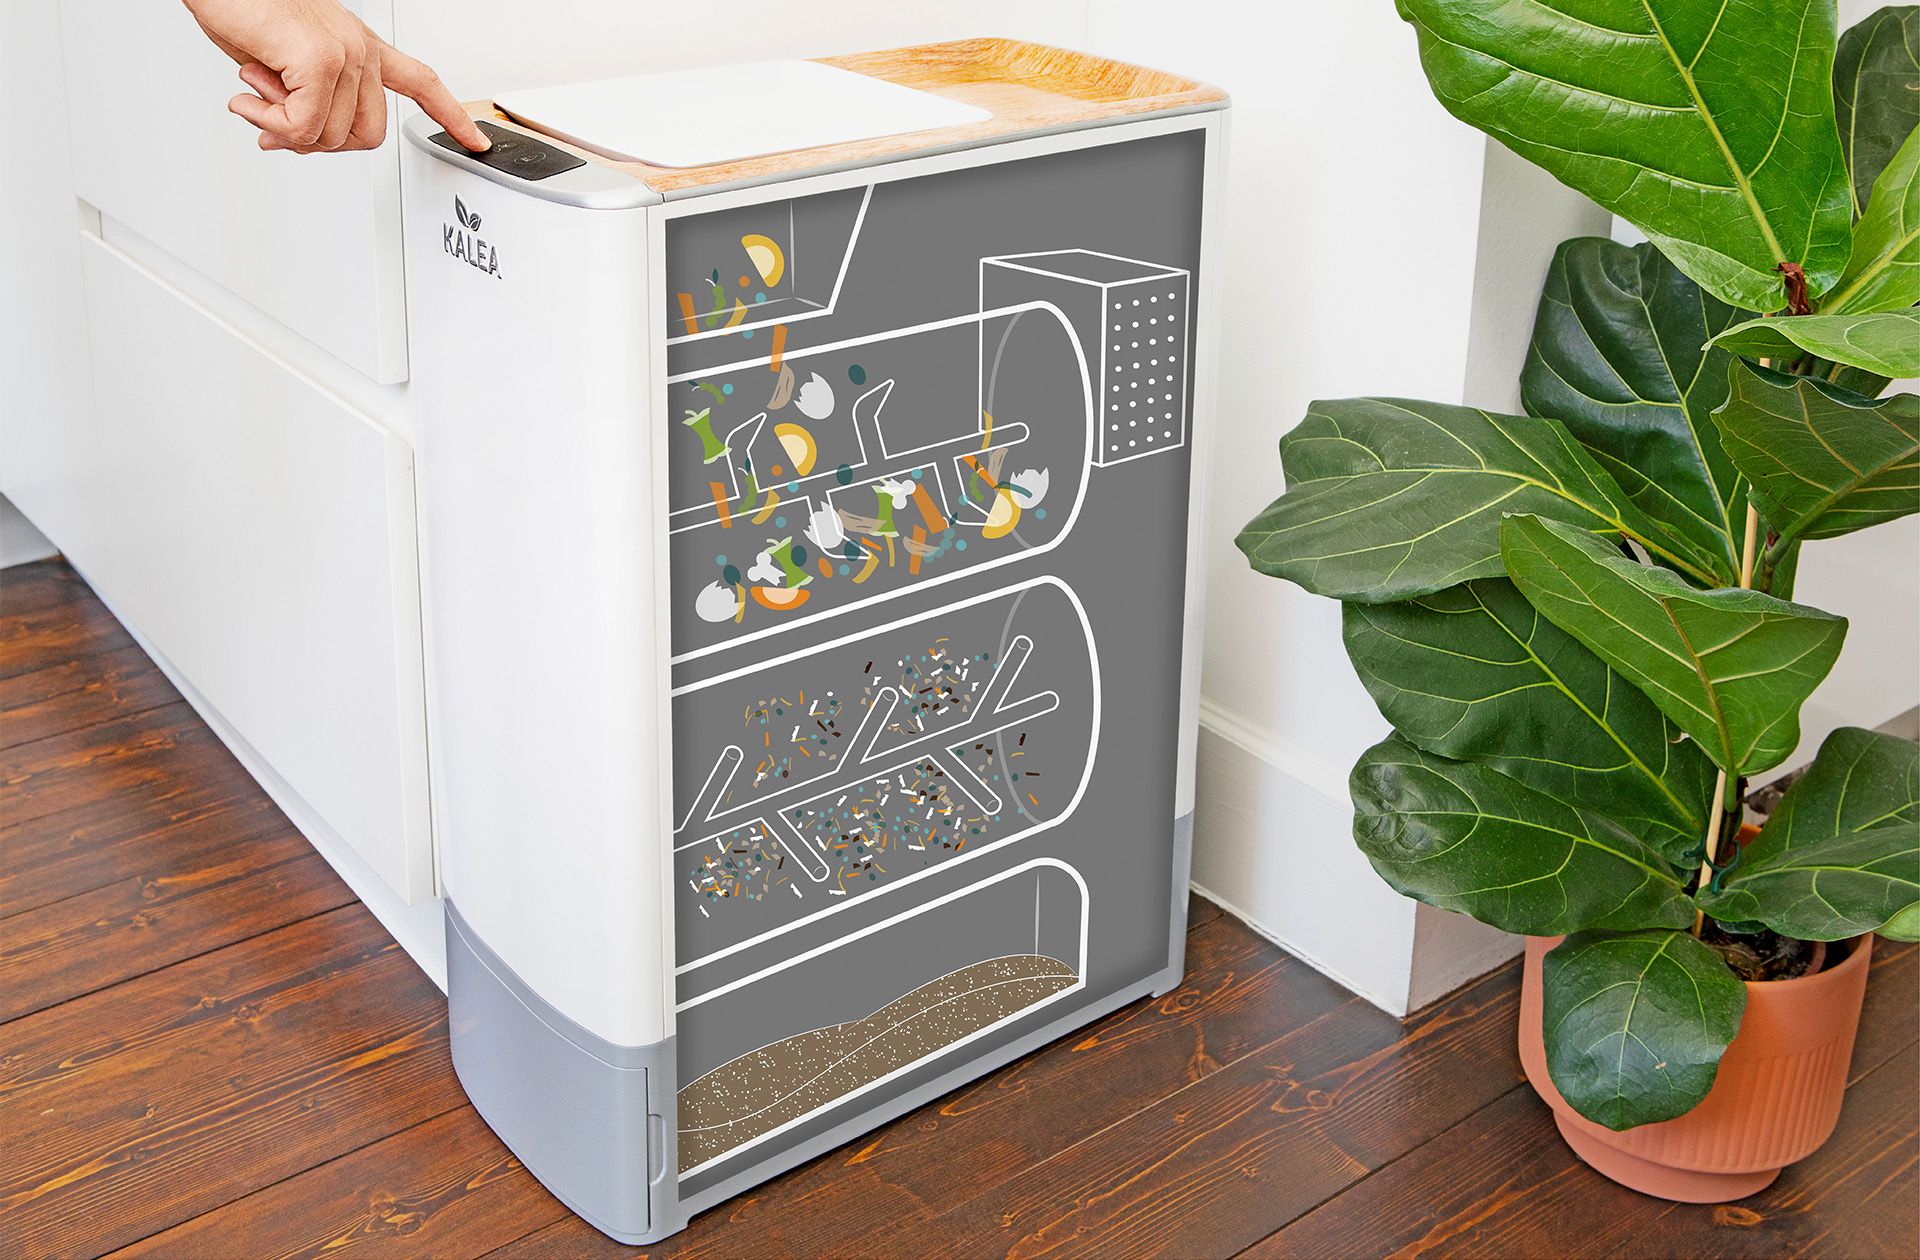 Kalea, ein intelligentes Küchengerät, verwandelt organische Abfälle in nur 48 Stunden in nährstoffreichen Kompost für Pflanzen und ist somit eine nachhaltige Lösung für die Entsorgung von Küchenabfällen in urbanen Haushalten. 